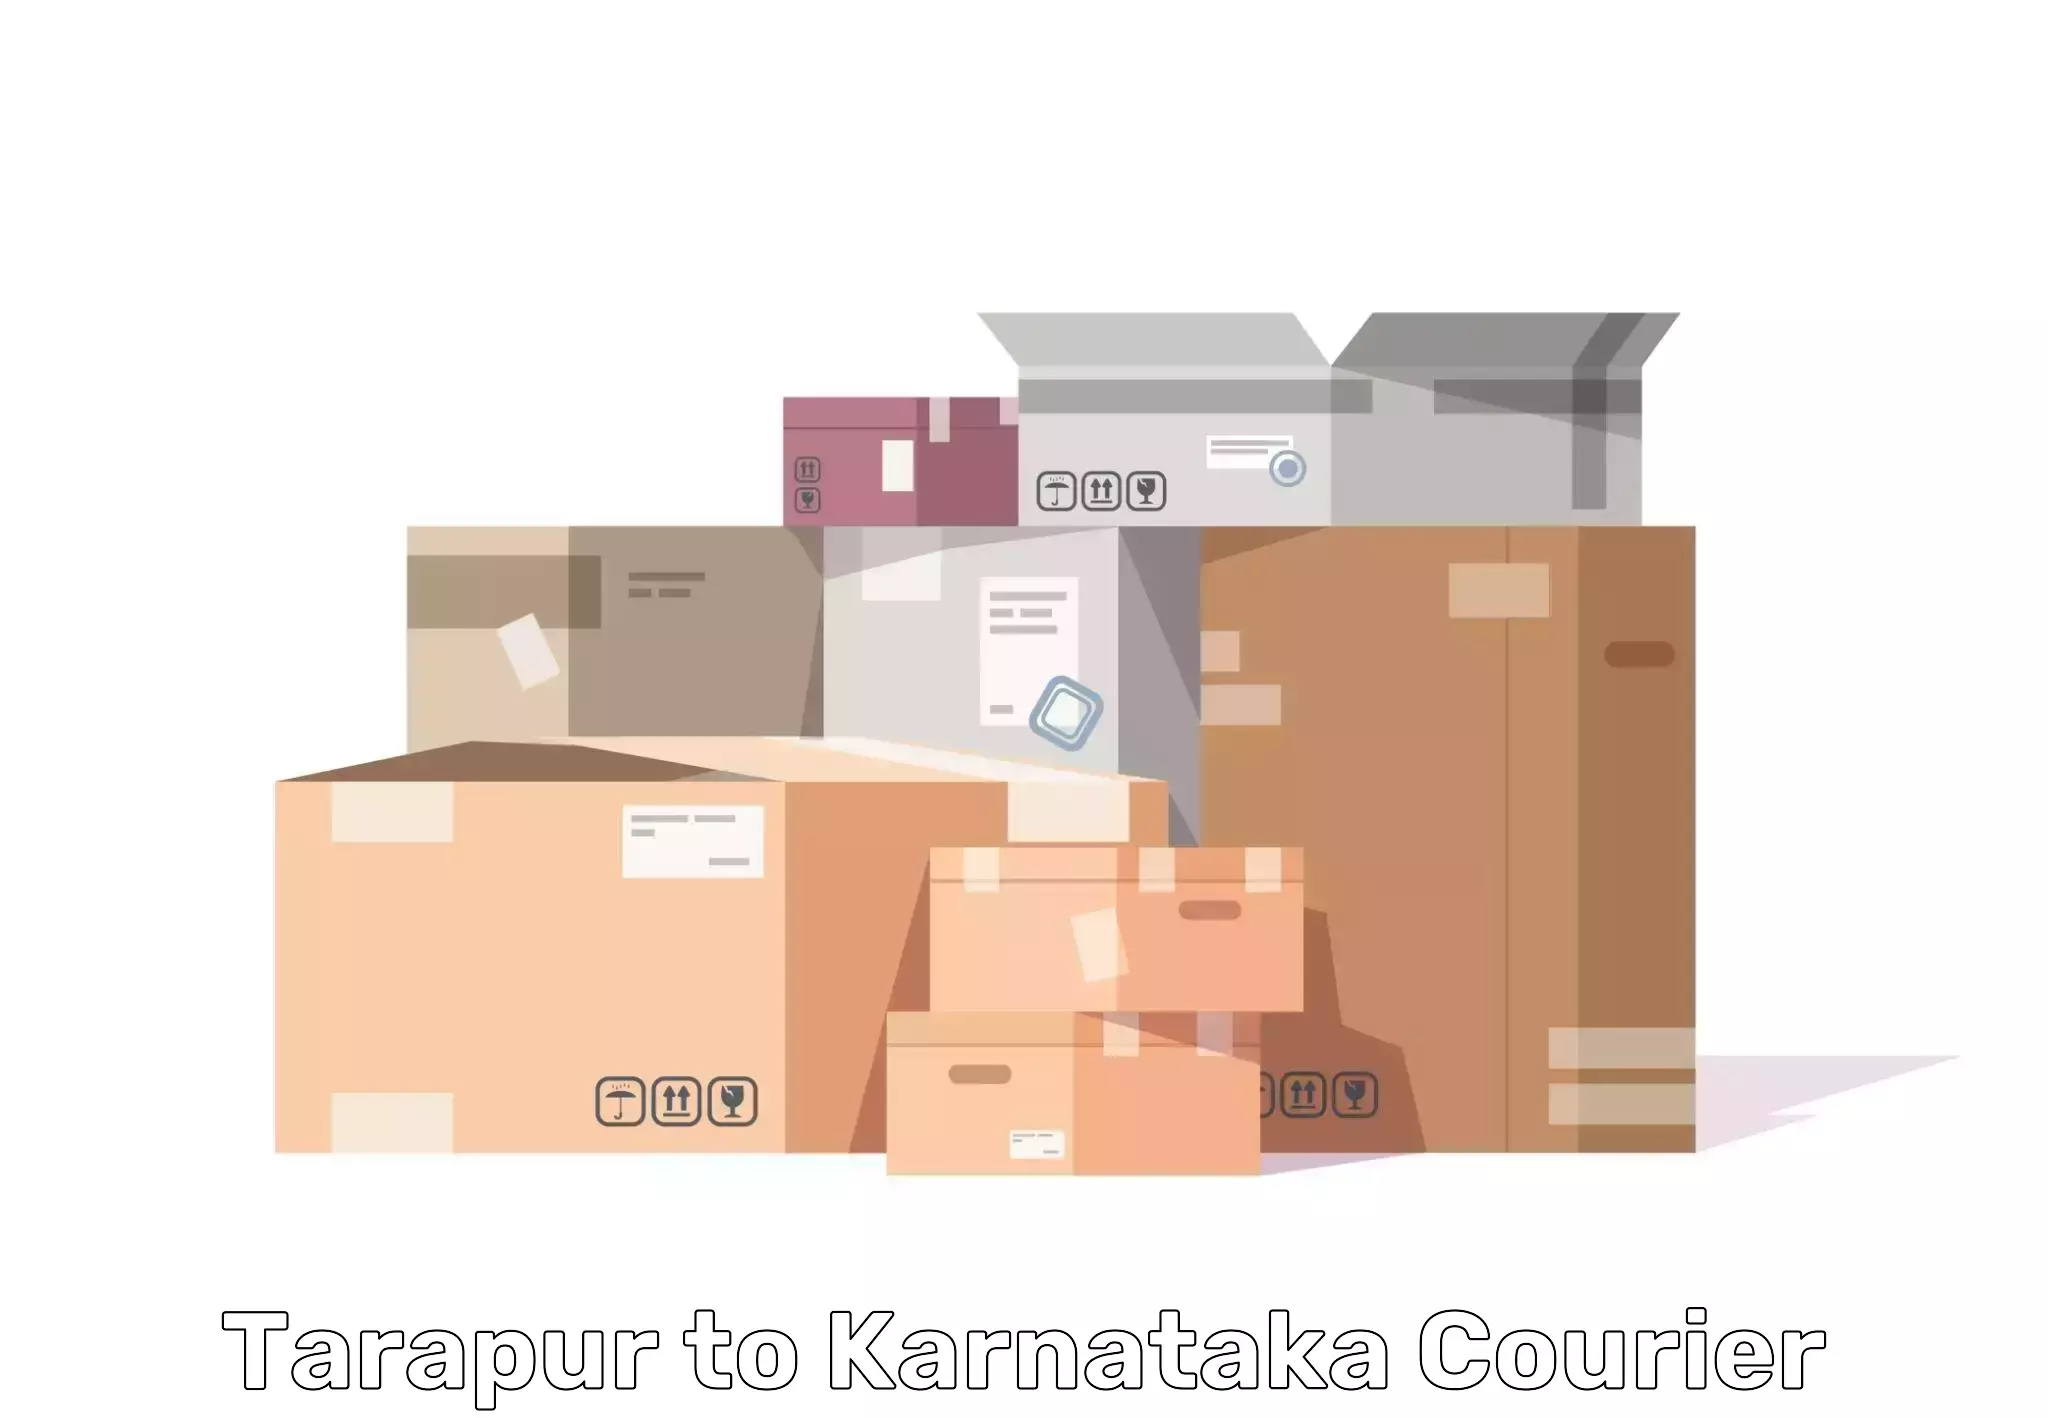 Furniture transport specialists Tarapur to Siruguppa